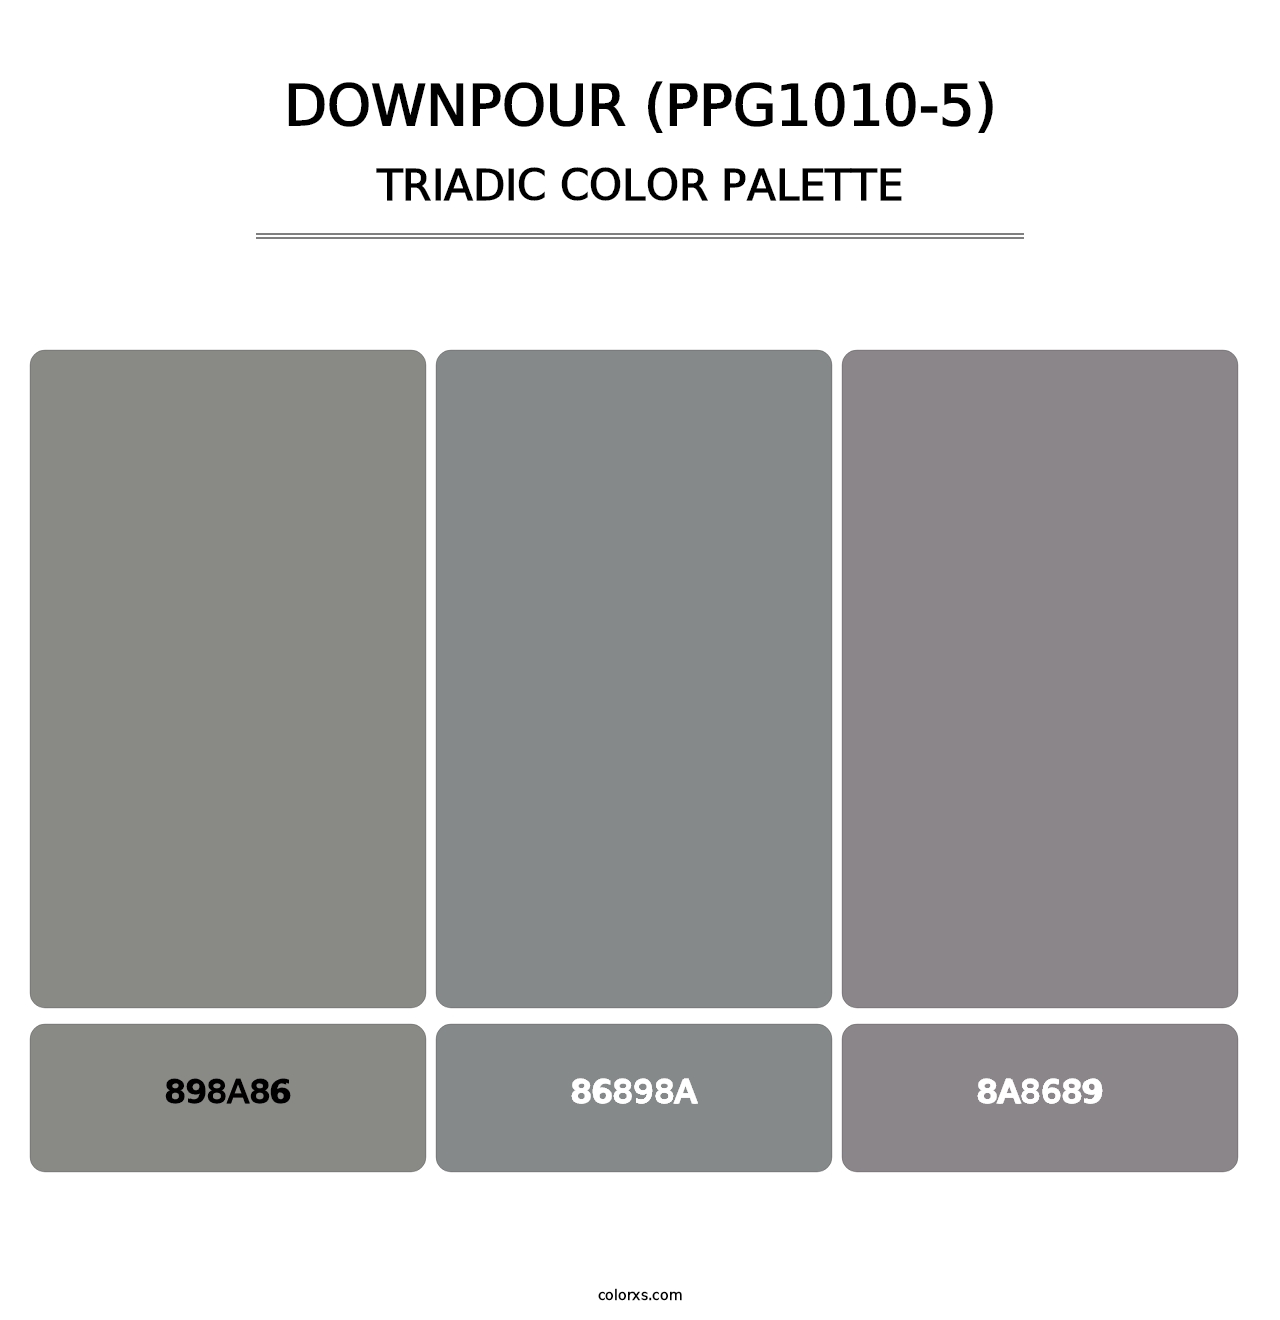 Downpour (PPG1010-5) - Triadic Color Palette